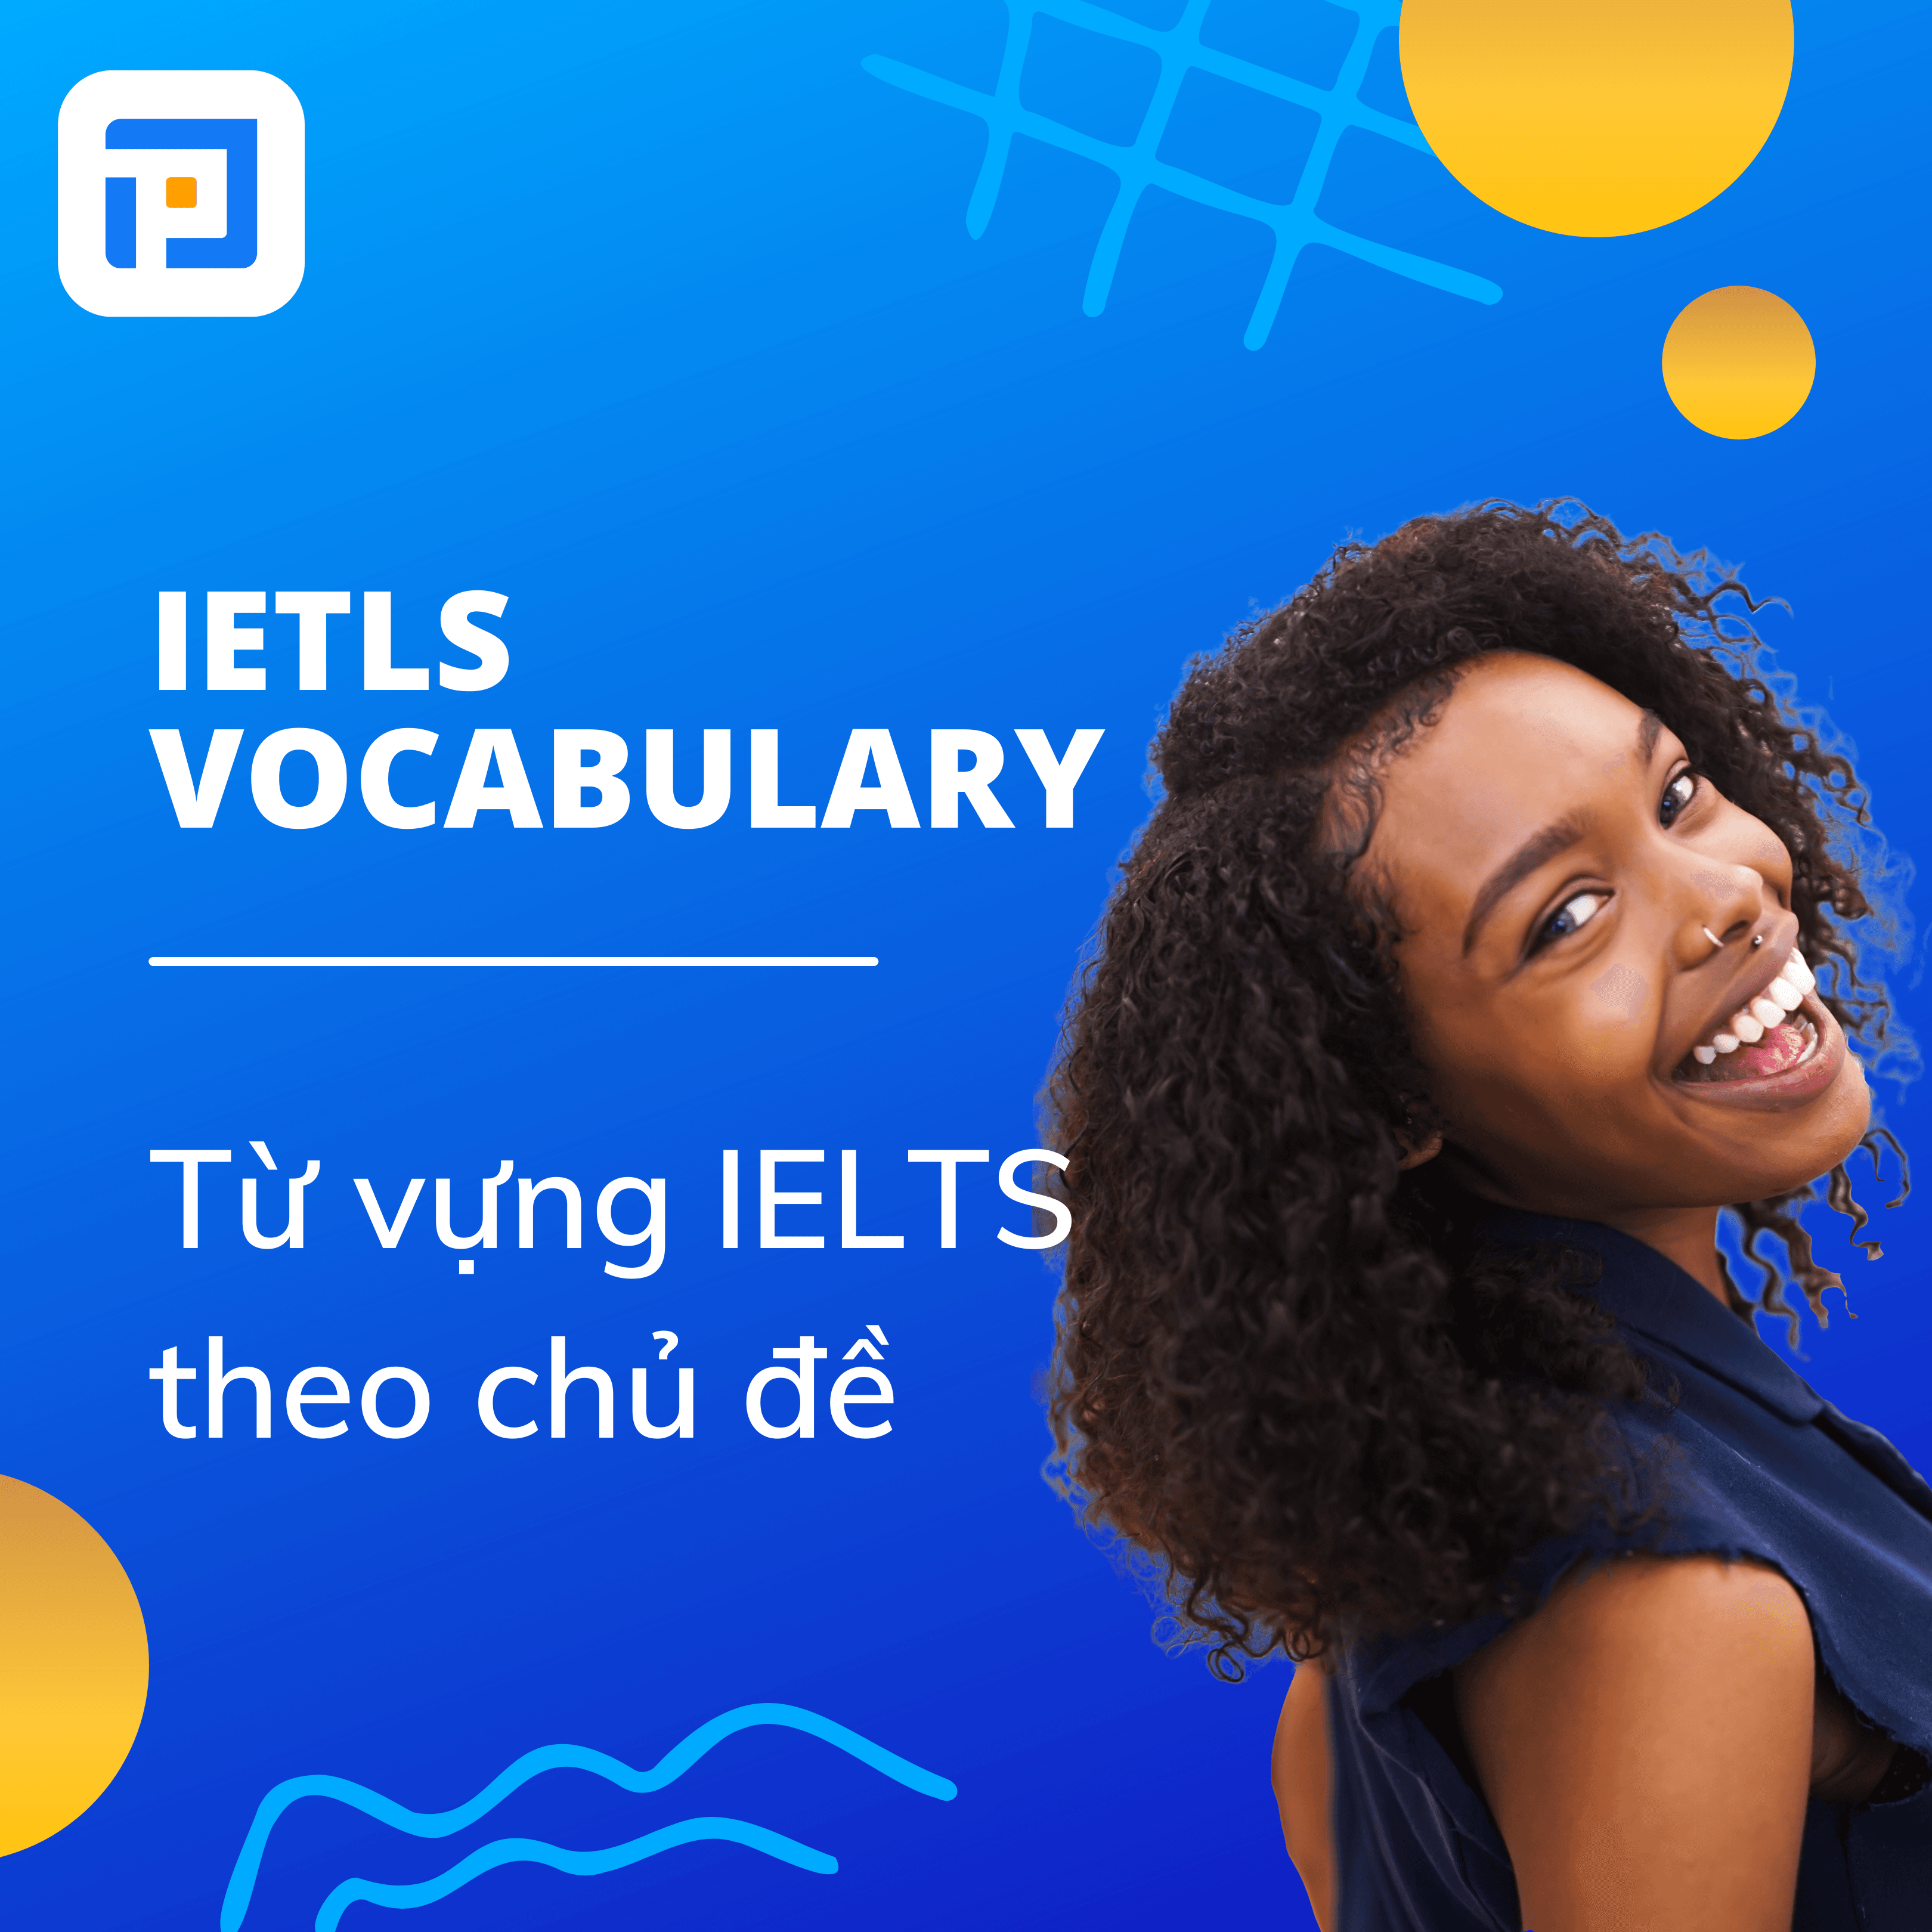 IELTS Vocabulary - Từ vựng IELTS theo chủ đề bạn nên biết